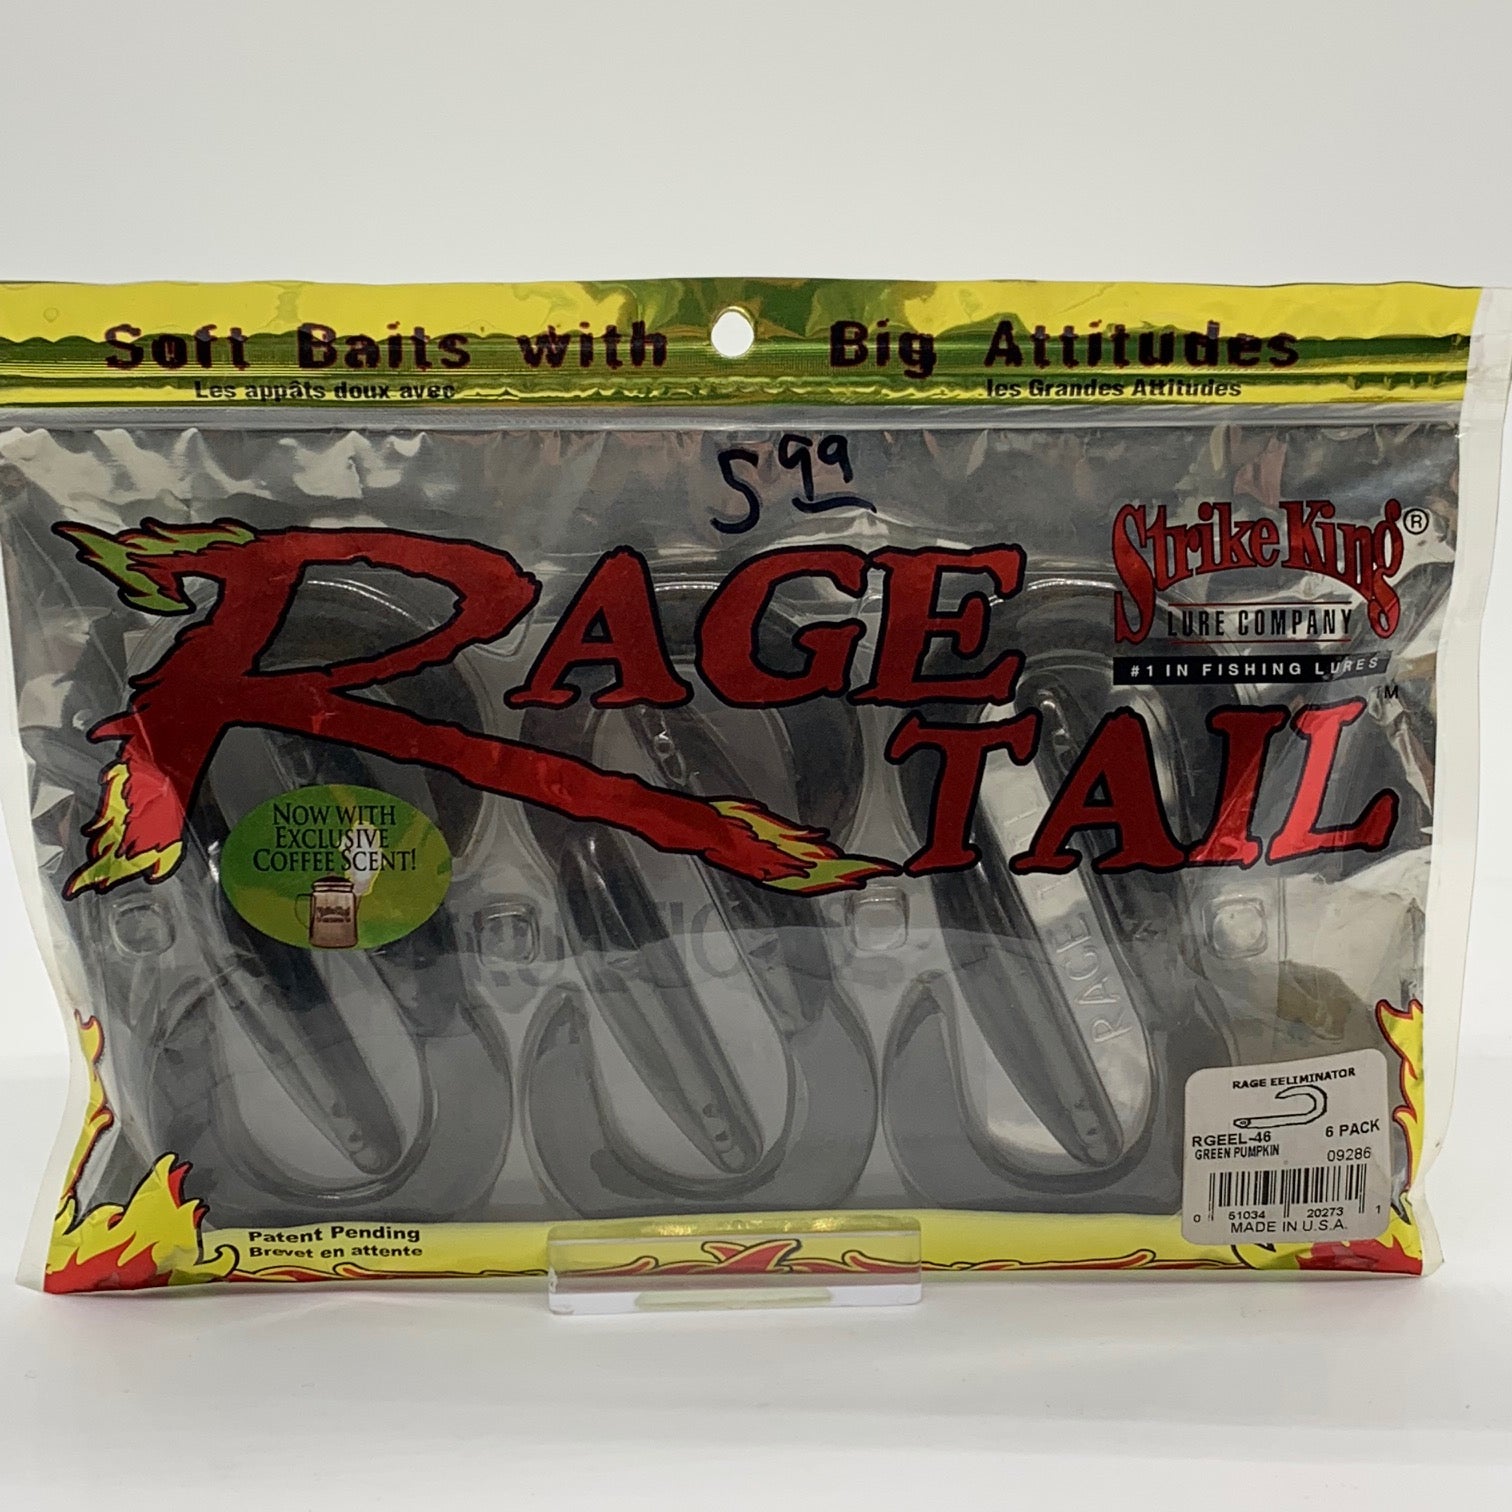 Strike King® Rage Tail Craw